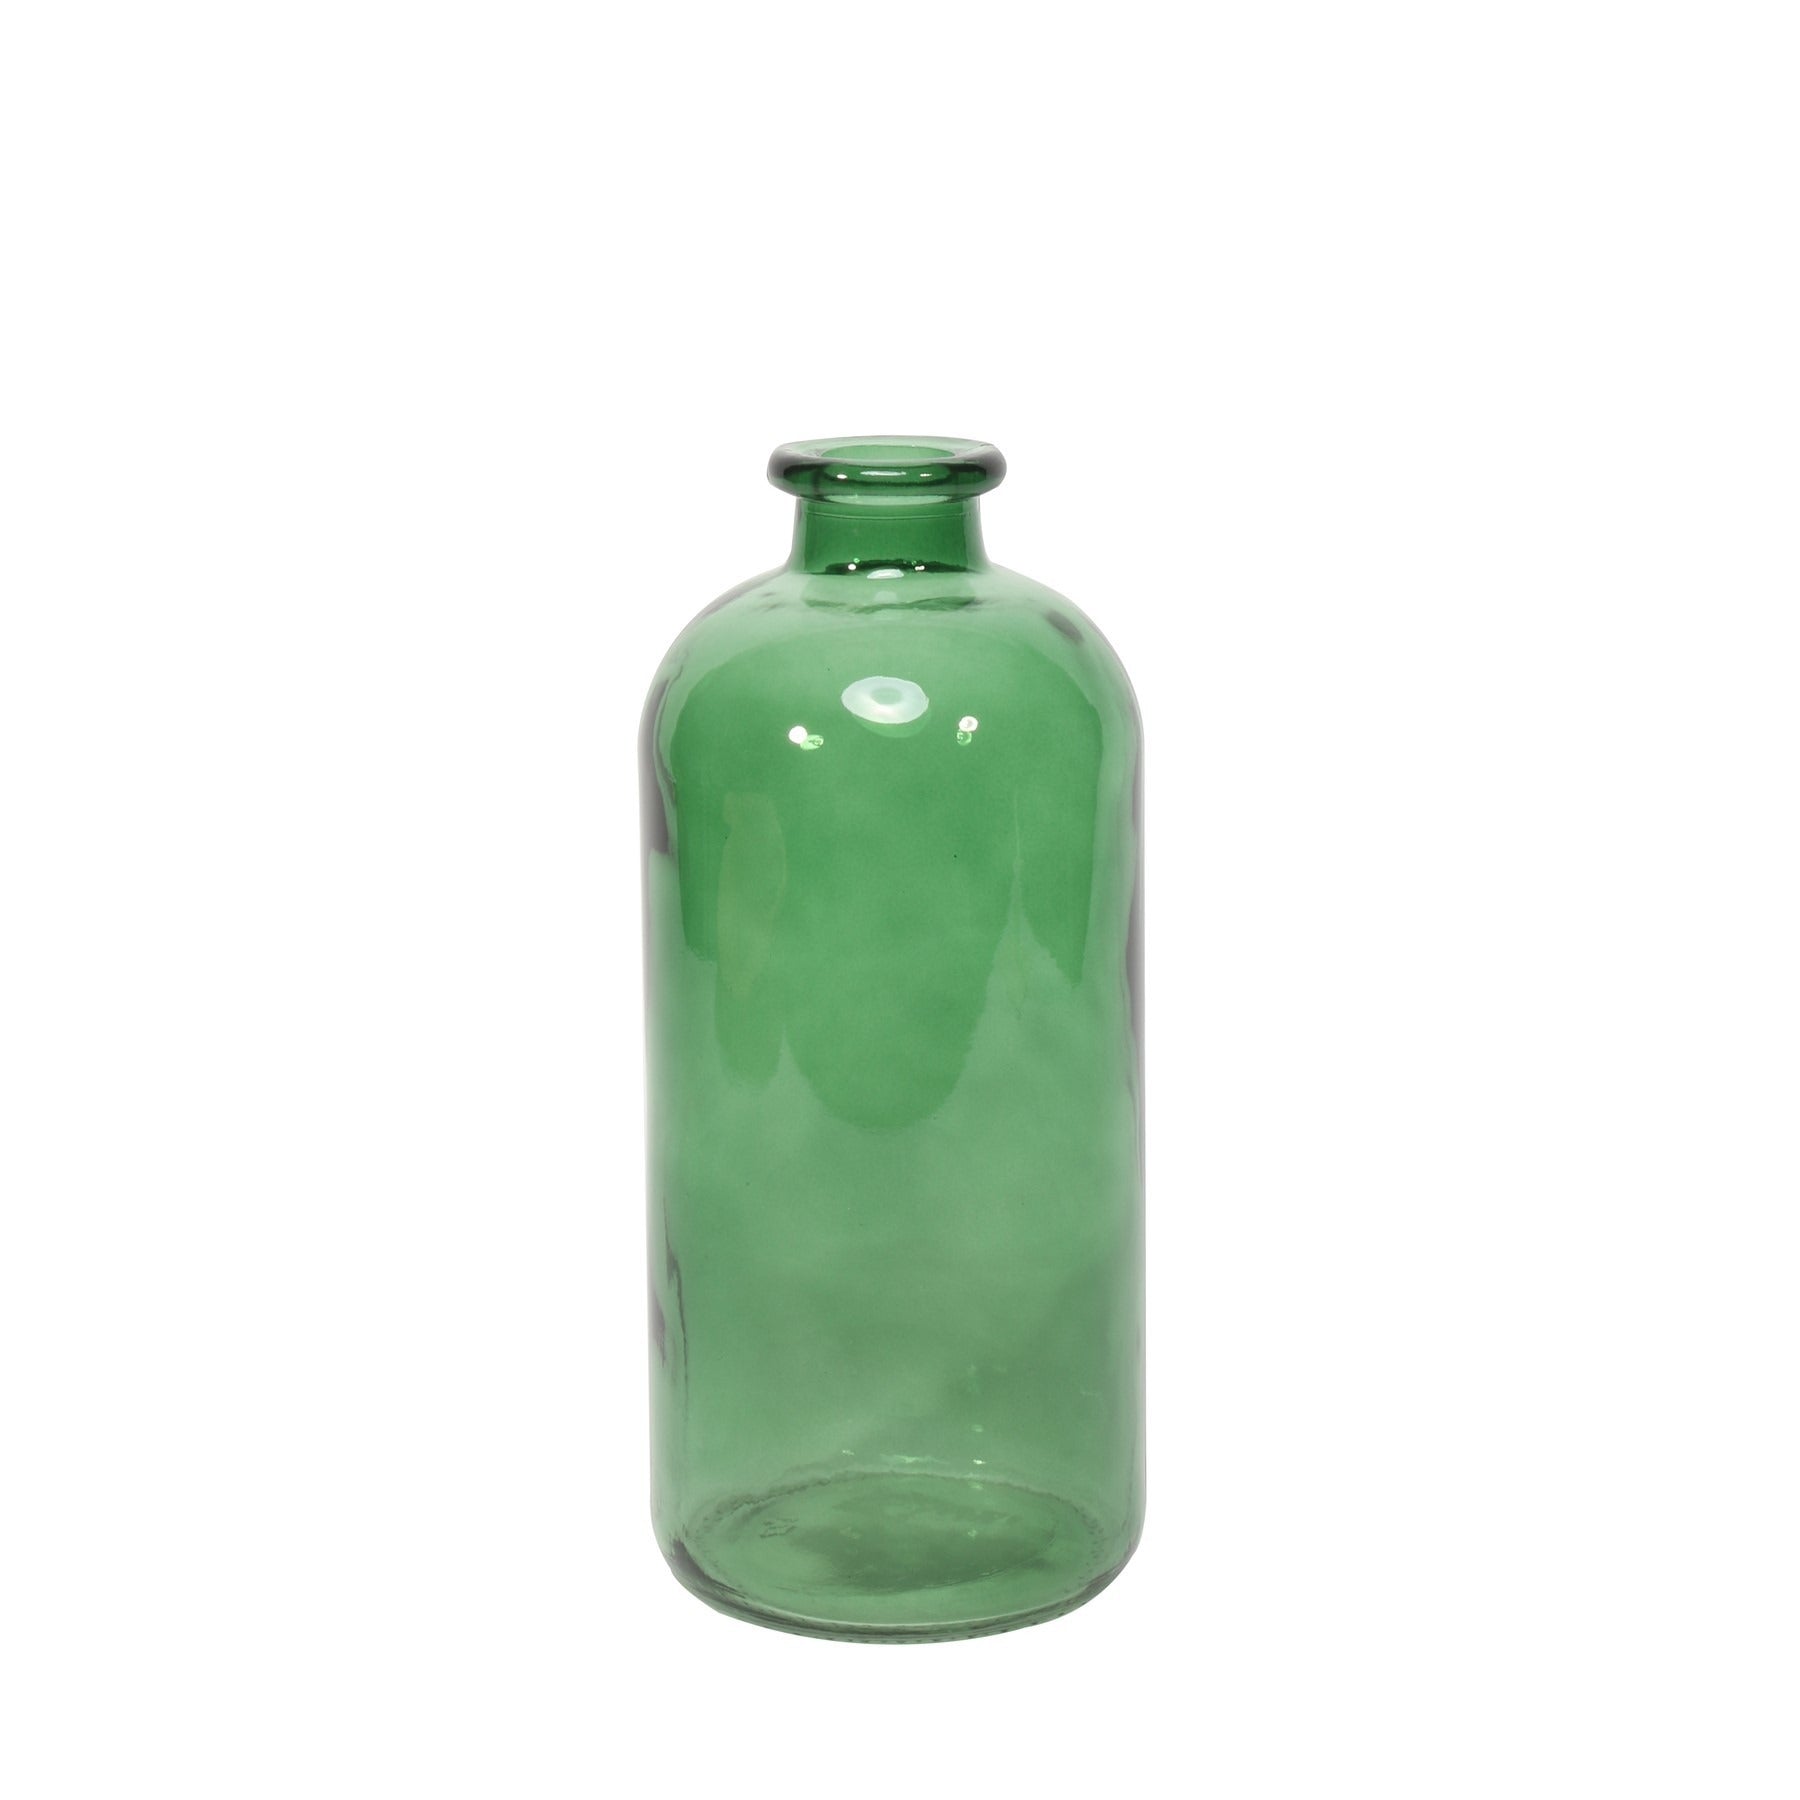 View Leon Bottle Bottle Pear Green 25cm information